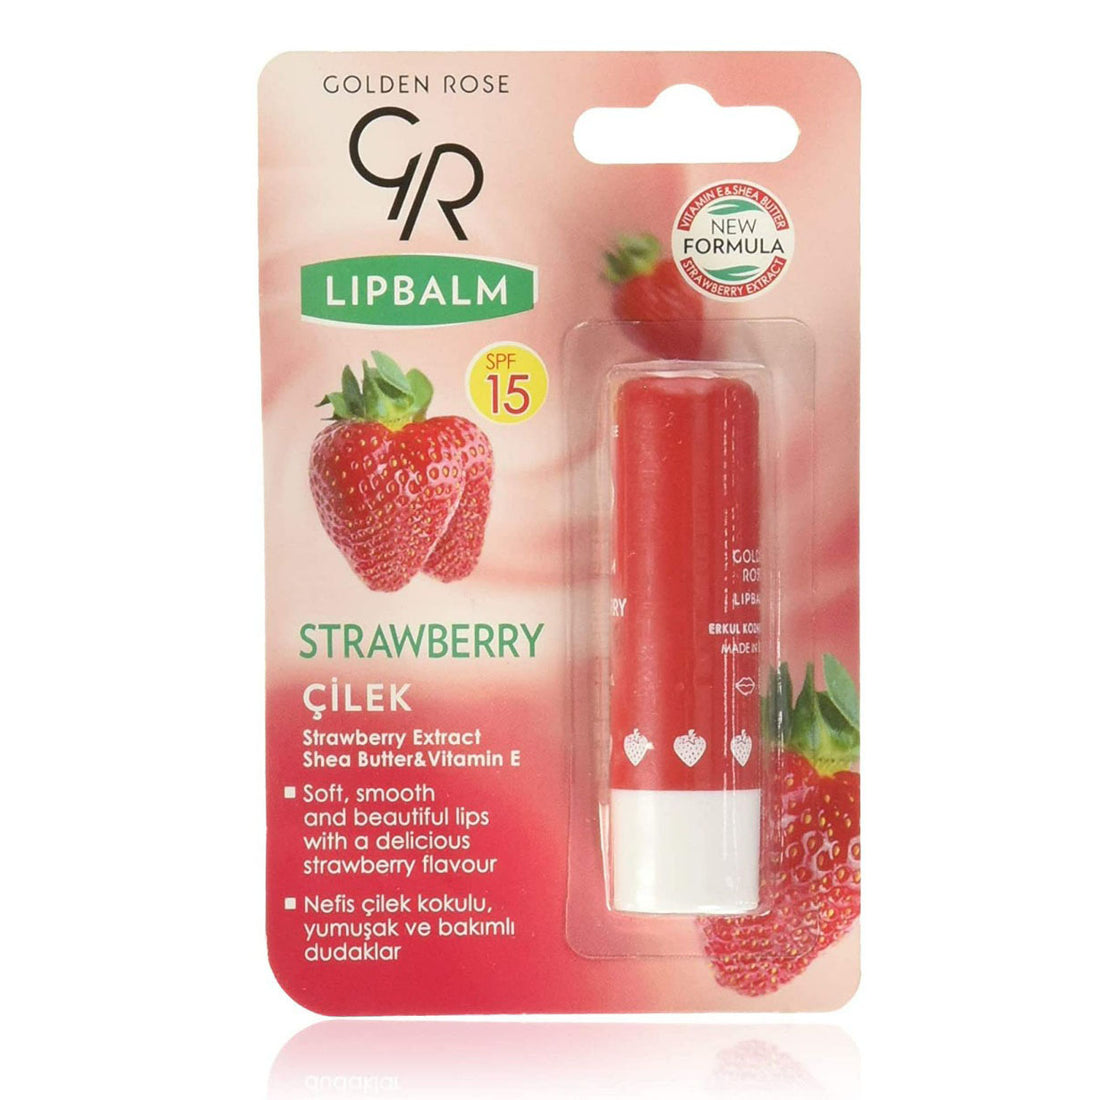 Golden Rose Lip Balm SPF-15 (4.6g) - Strawberry